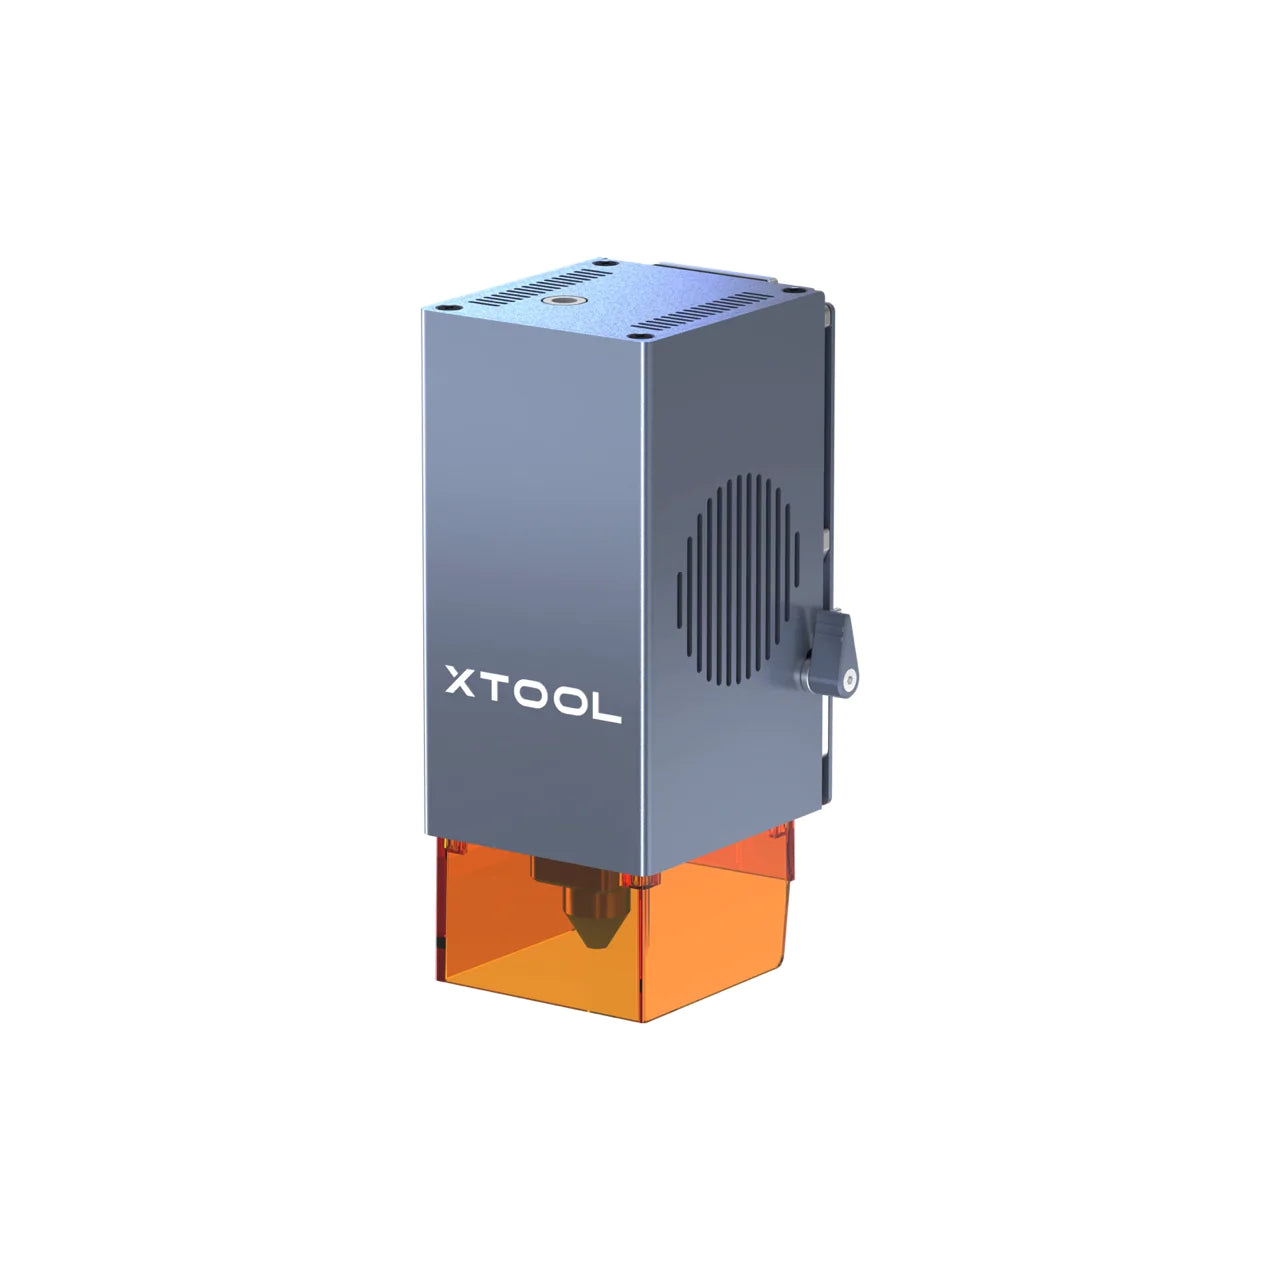 xTool D1 Pro 40W Laser Module